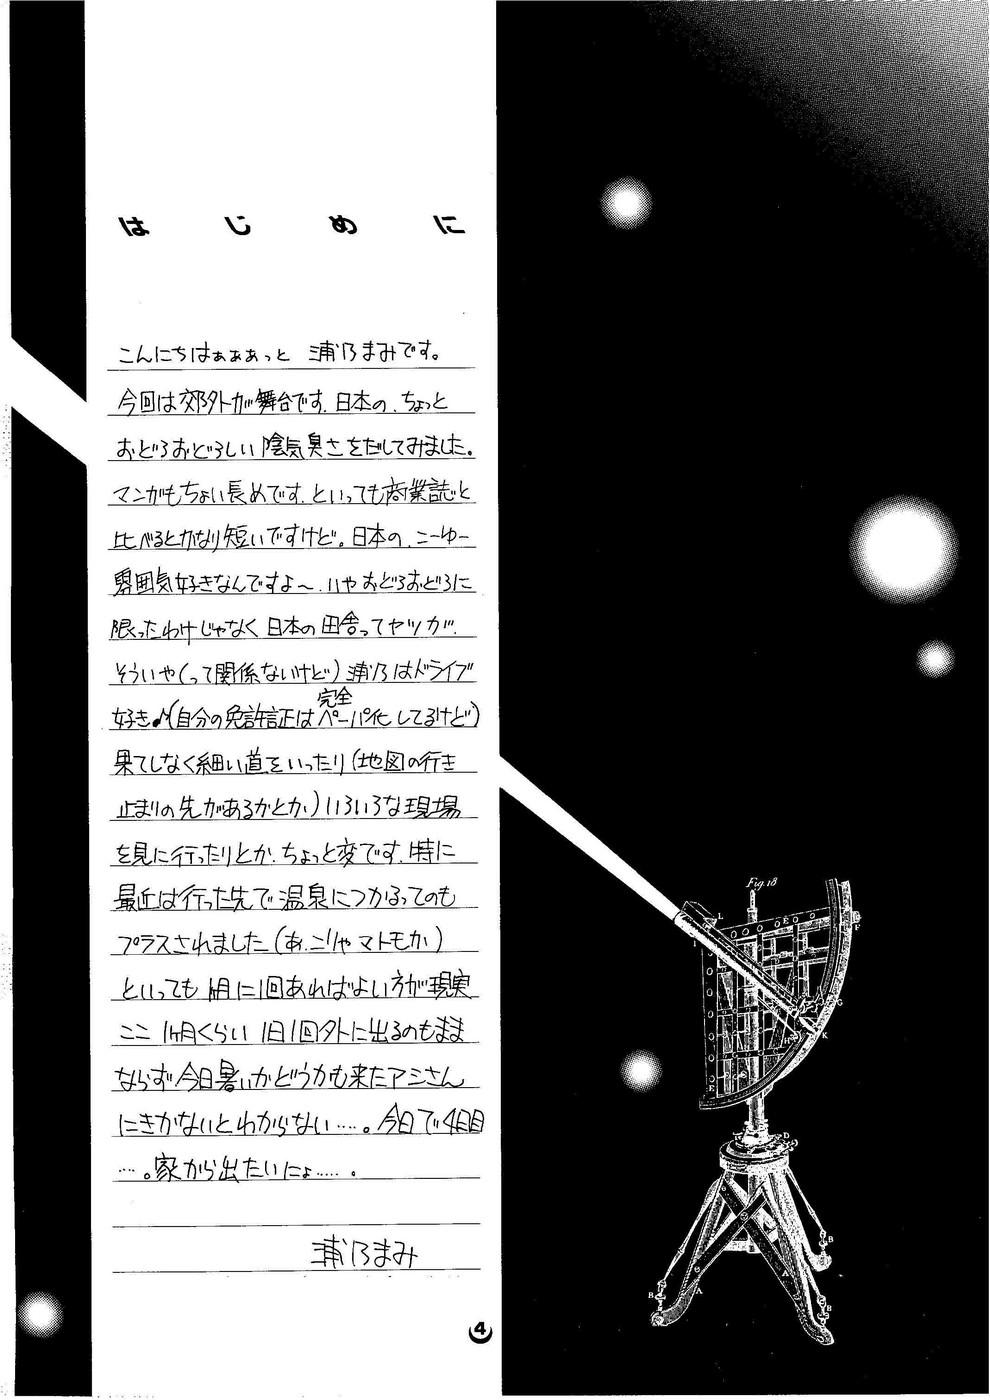 Cojiendo Shoujo Kankin 6 Assgape - Page 3